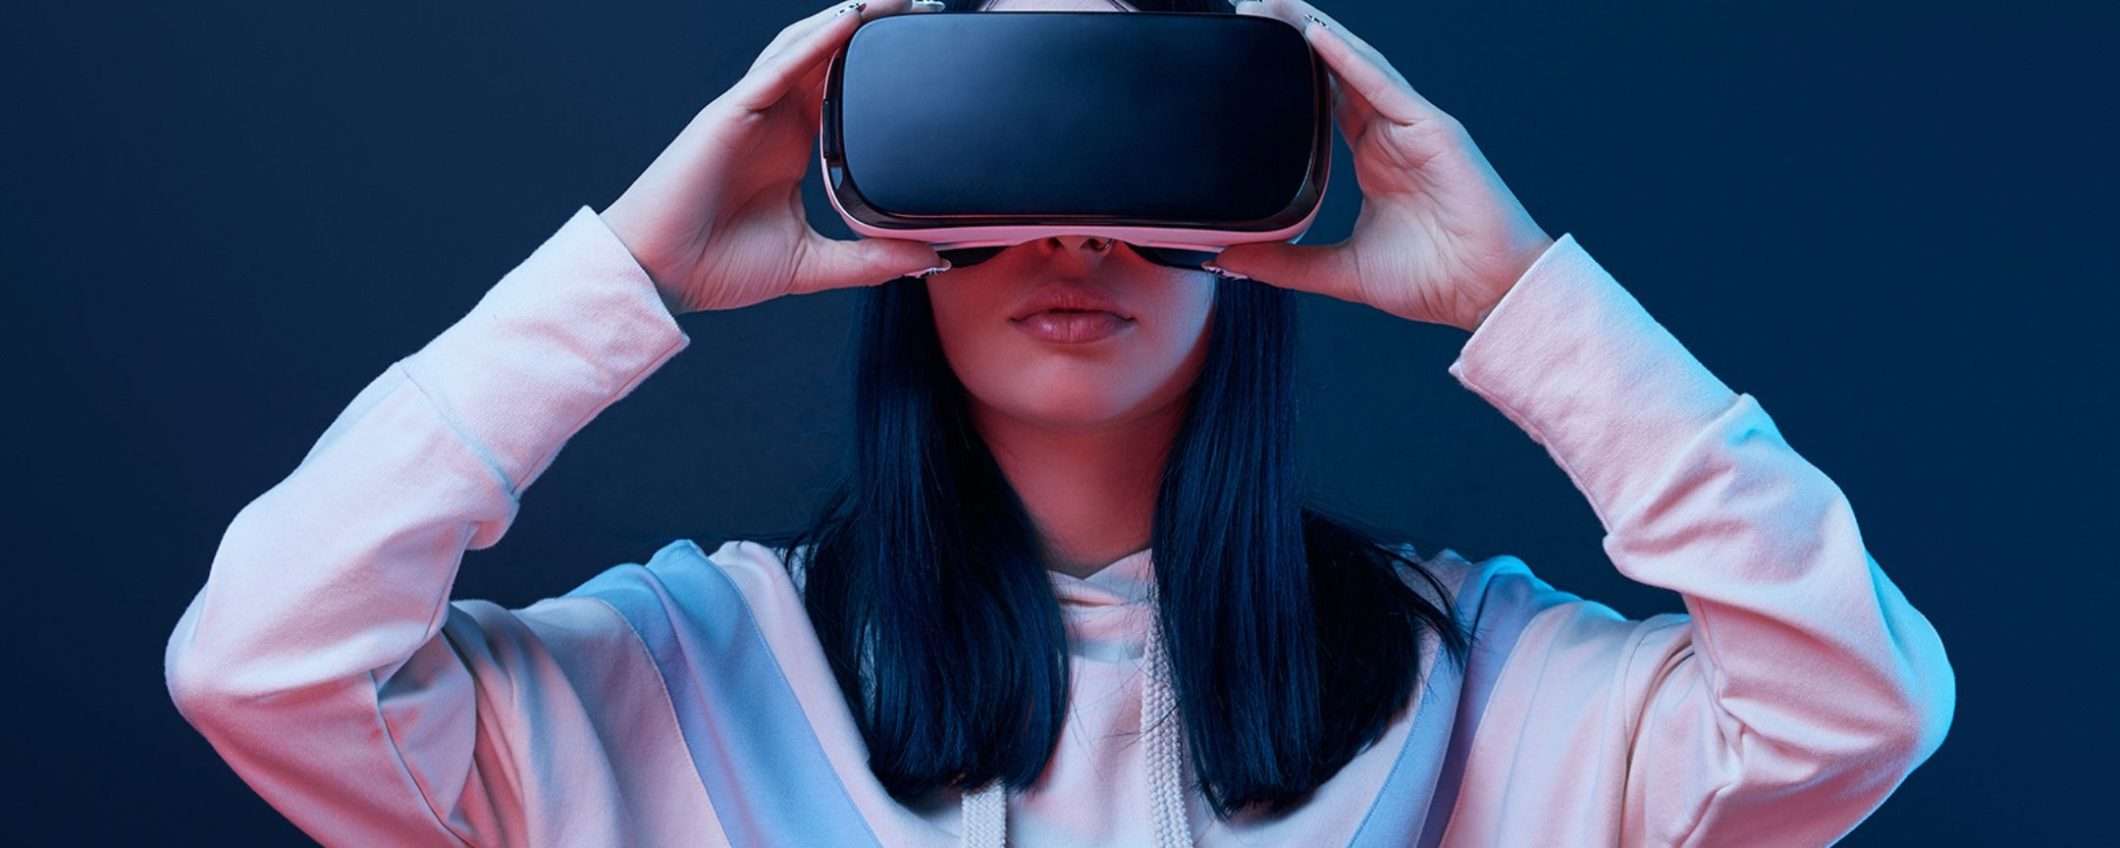 Apple ha posticipato il debutto dell'auricolare AR/VR